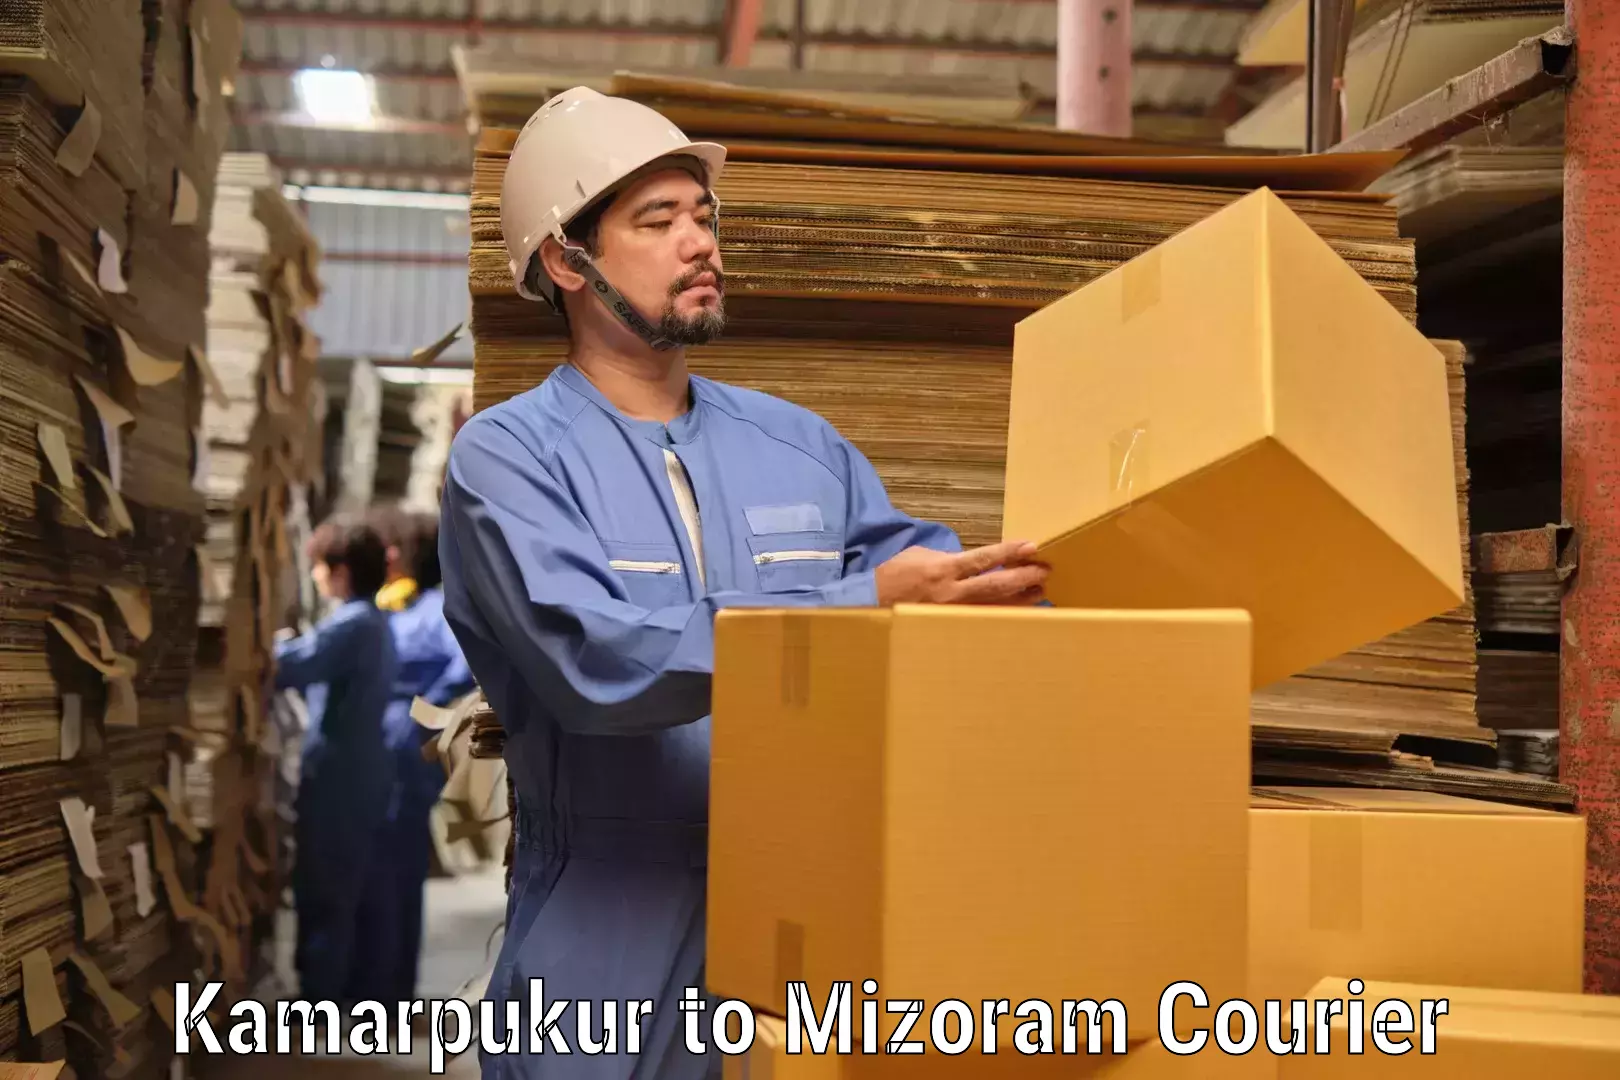 Multi-national courier services Kamarpukur to Mizoram